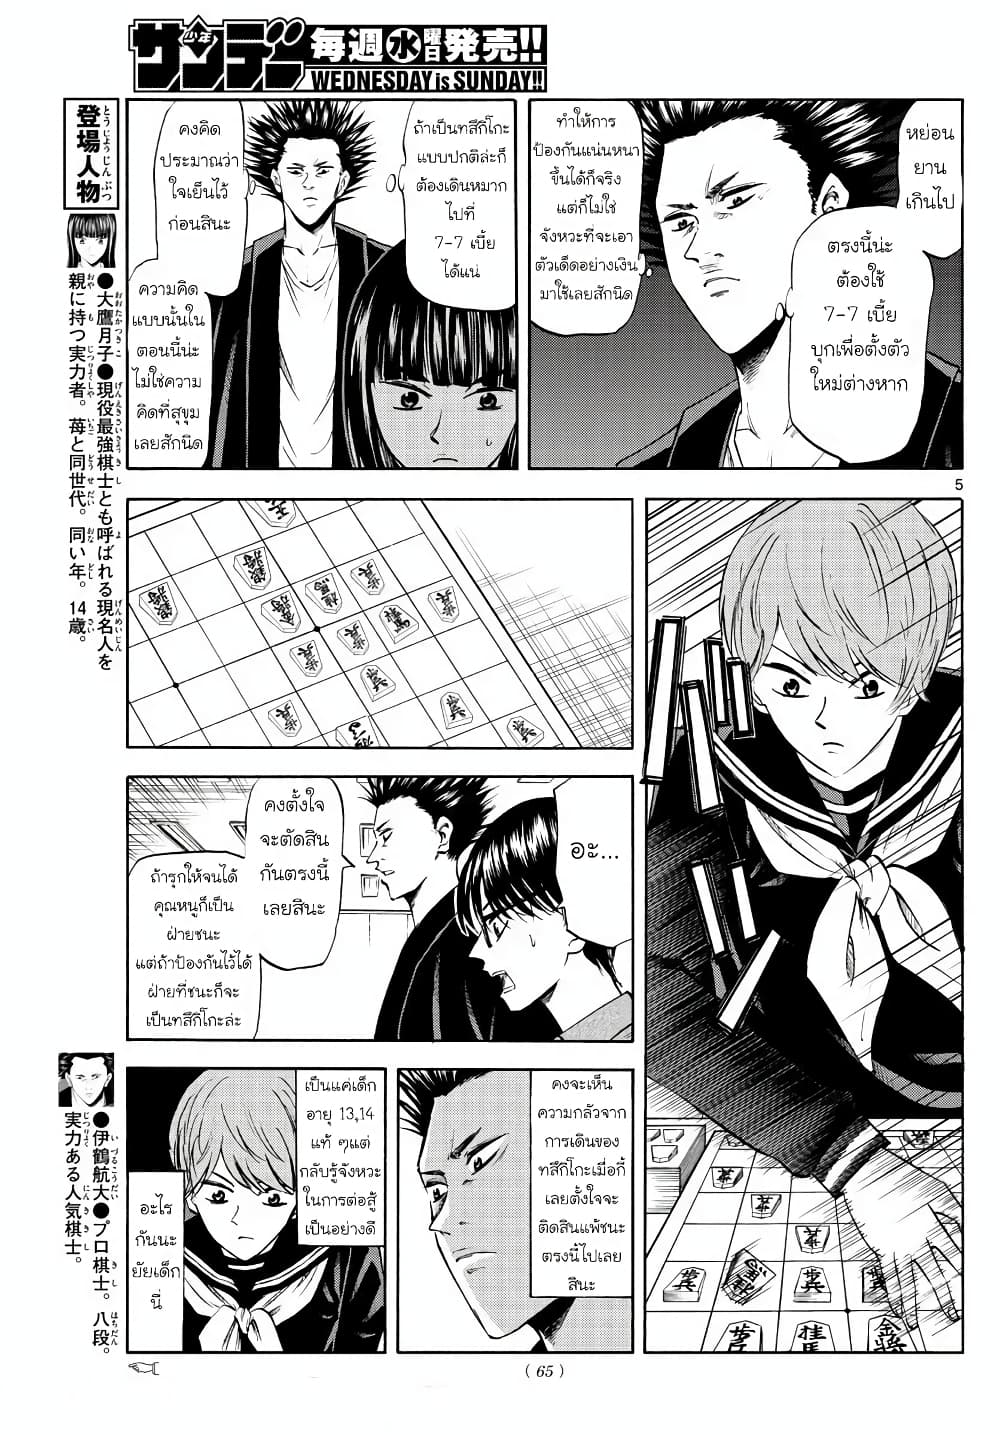 Ryuu to Ichigo 6 (5)